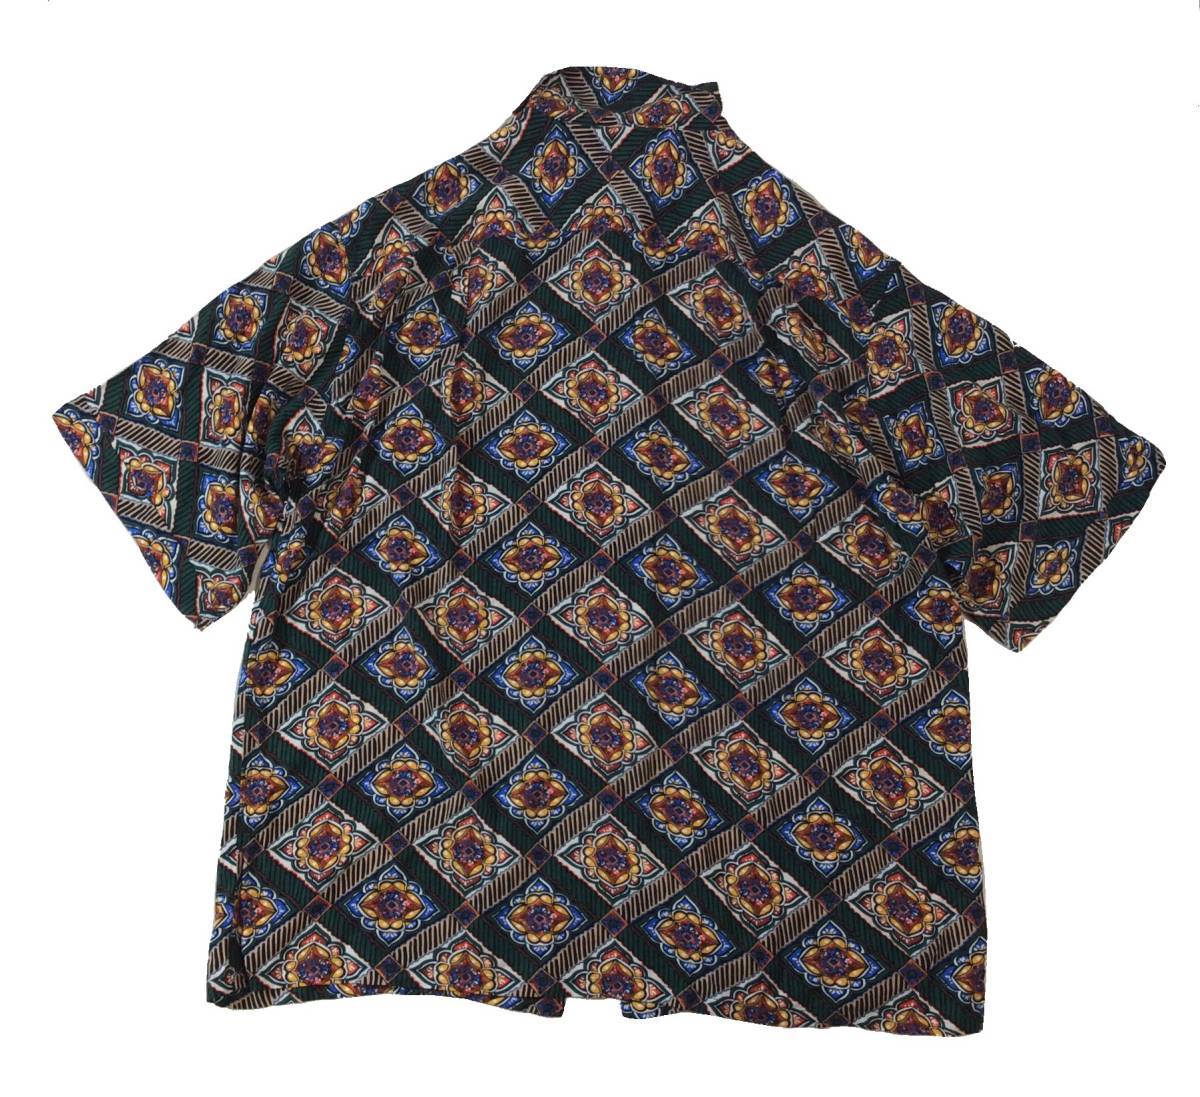  не использовался TOWN CRAFT Town craft Urban Research SonnyLabel специальный заказ batik образец рубашка с коротким рукавом общий рисунок оттенок зеленого мужской L стоимость доставки 250 иен 